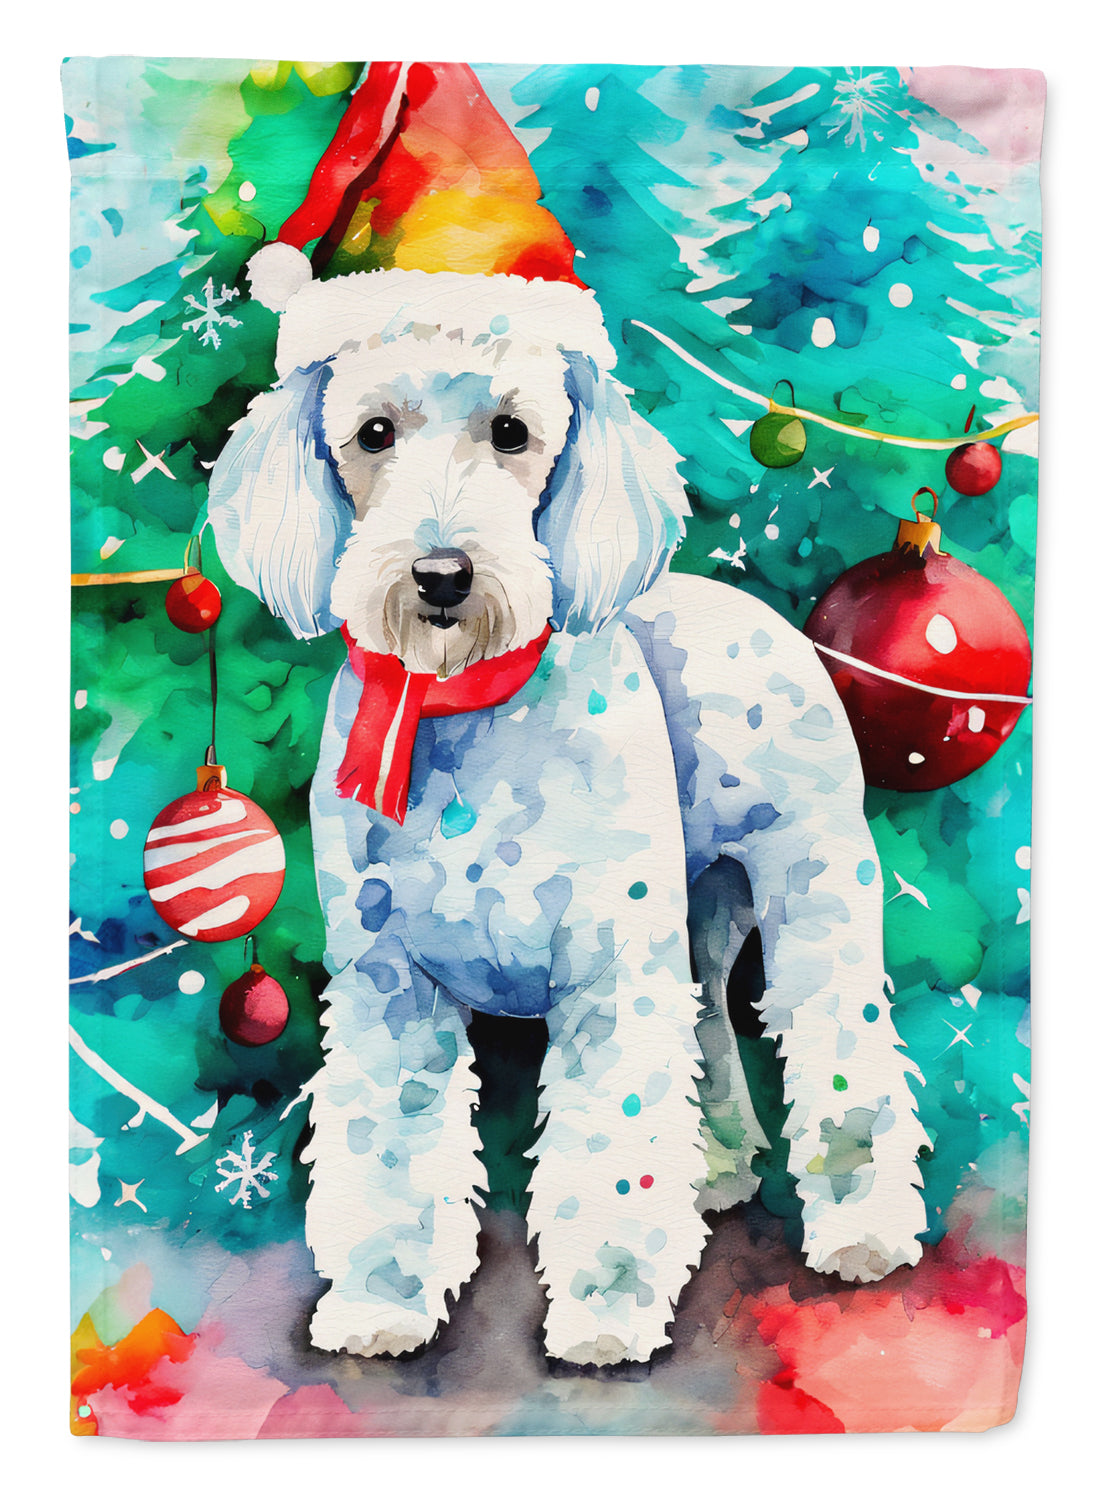 Buy this Bedlington Terrier Christmas Garden Flag